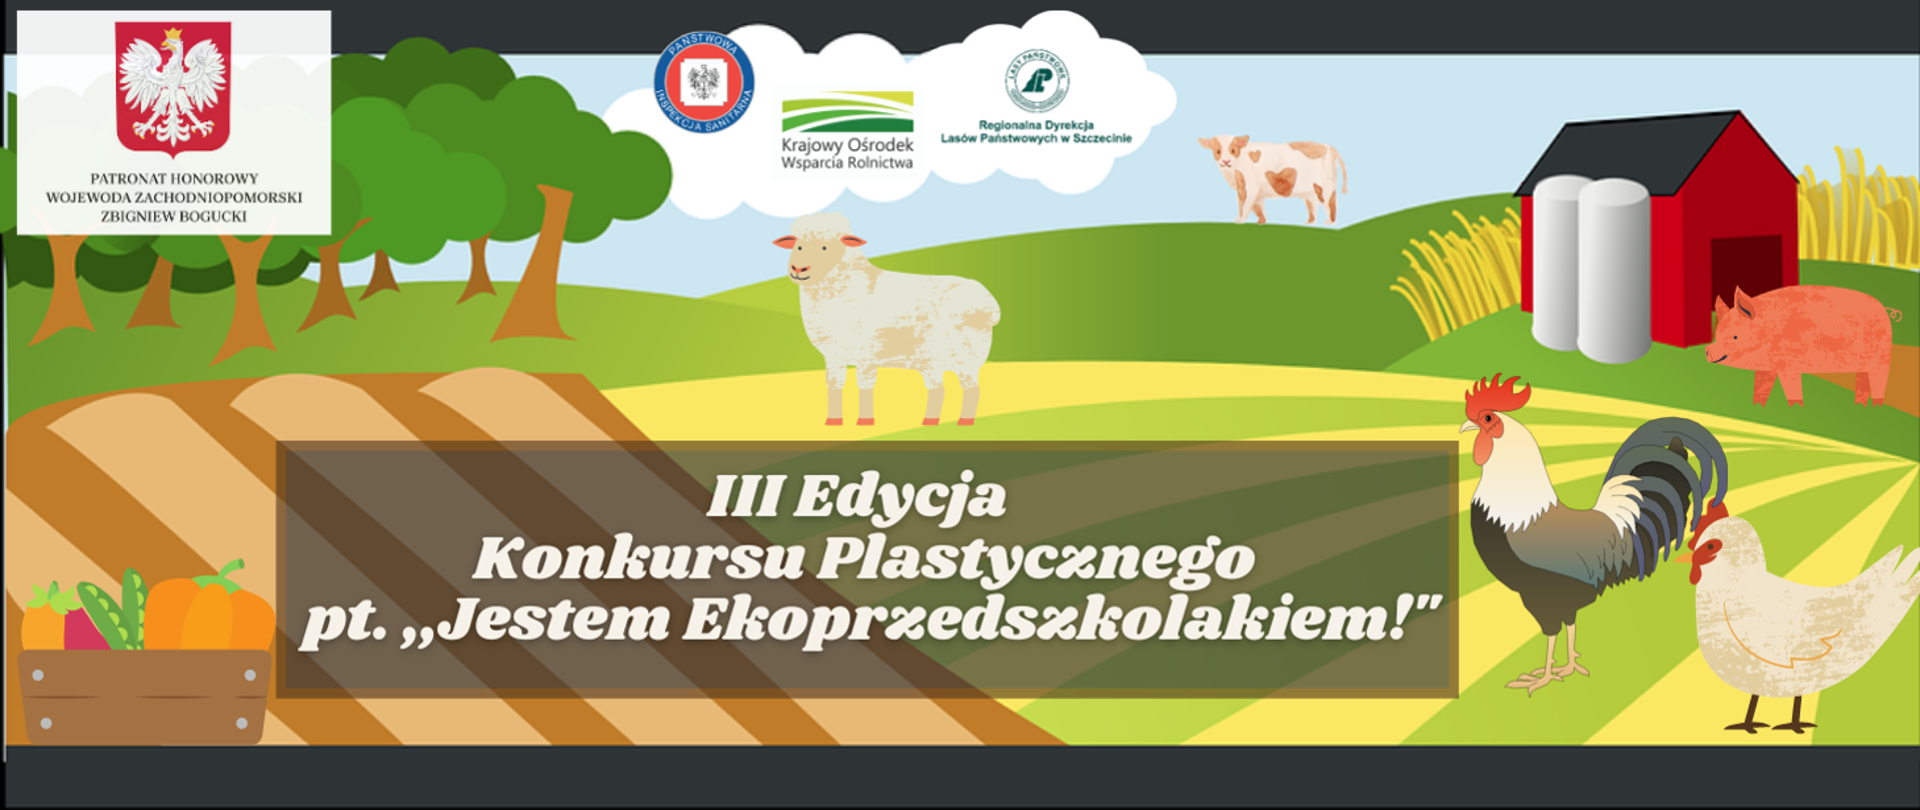 III Edycja Konkursu Plastycznego, grafika przedstawia pole ze zwierzętami: owieczka, kura, kogut, świnka i krowa